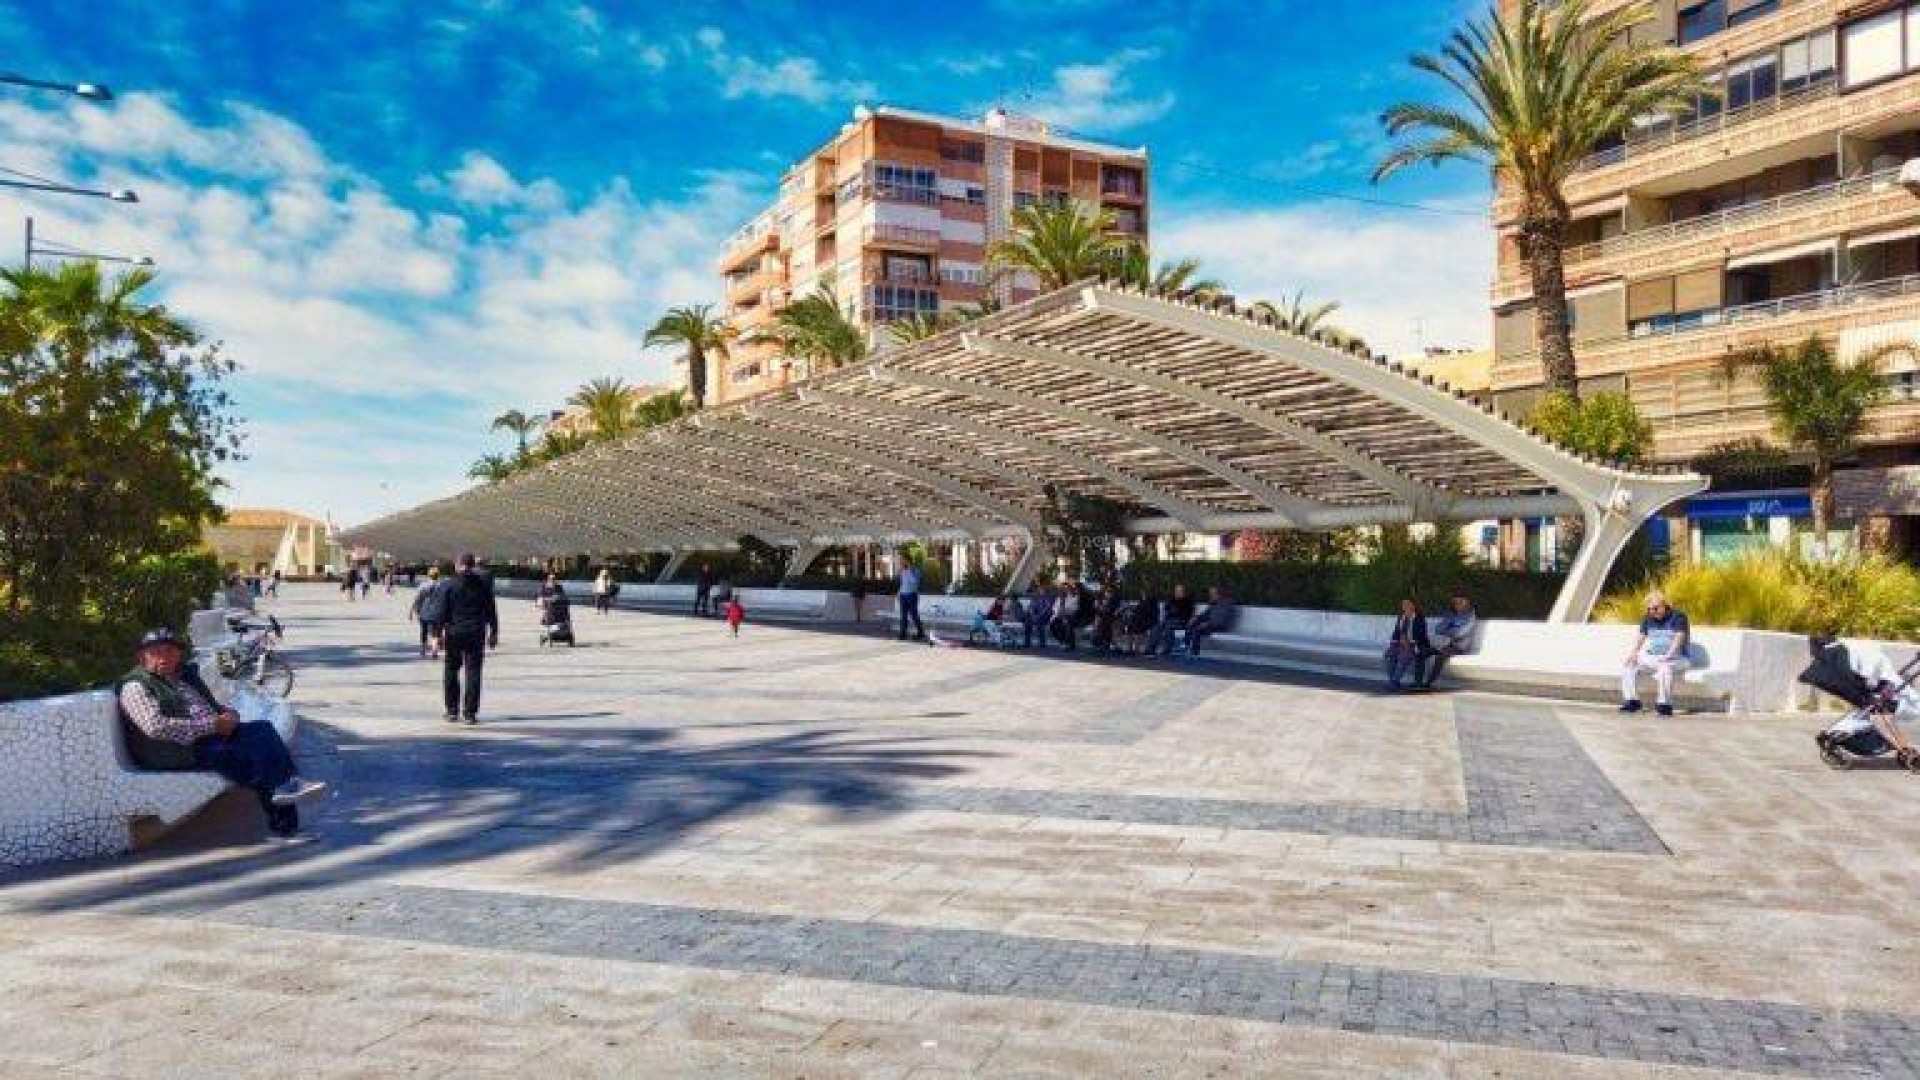 Nye leiligheter i Torrevieja i Alicante-provinsen ,1 og 2 sov, 1 og 2 bad, vakkert felles solarium, toppleiligheter. Nær strender og infrastruktur.